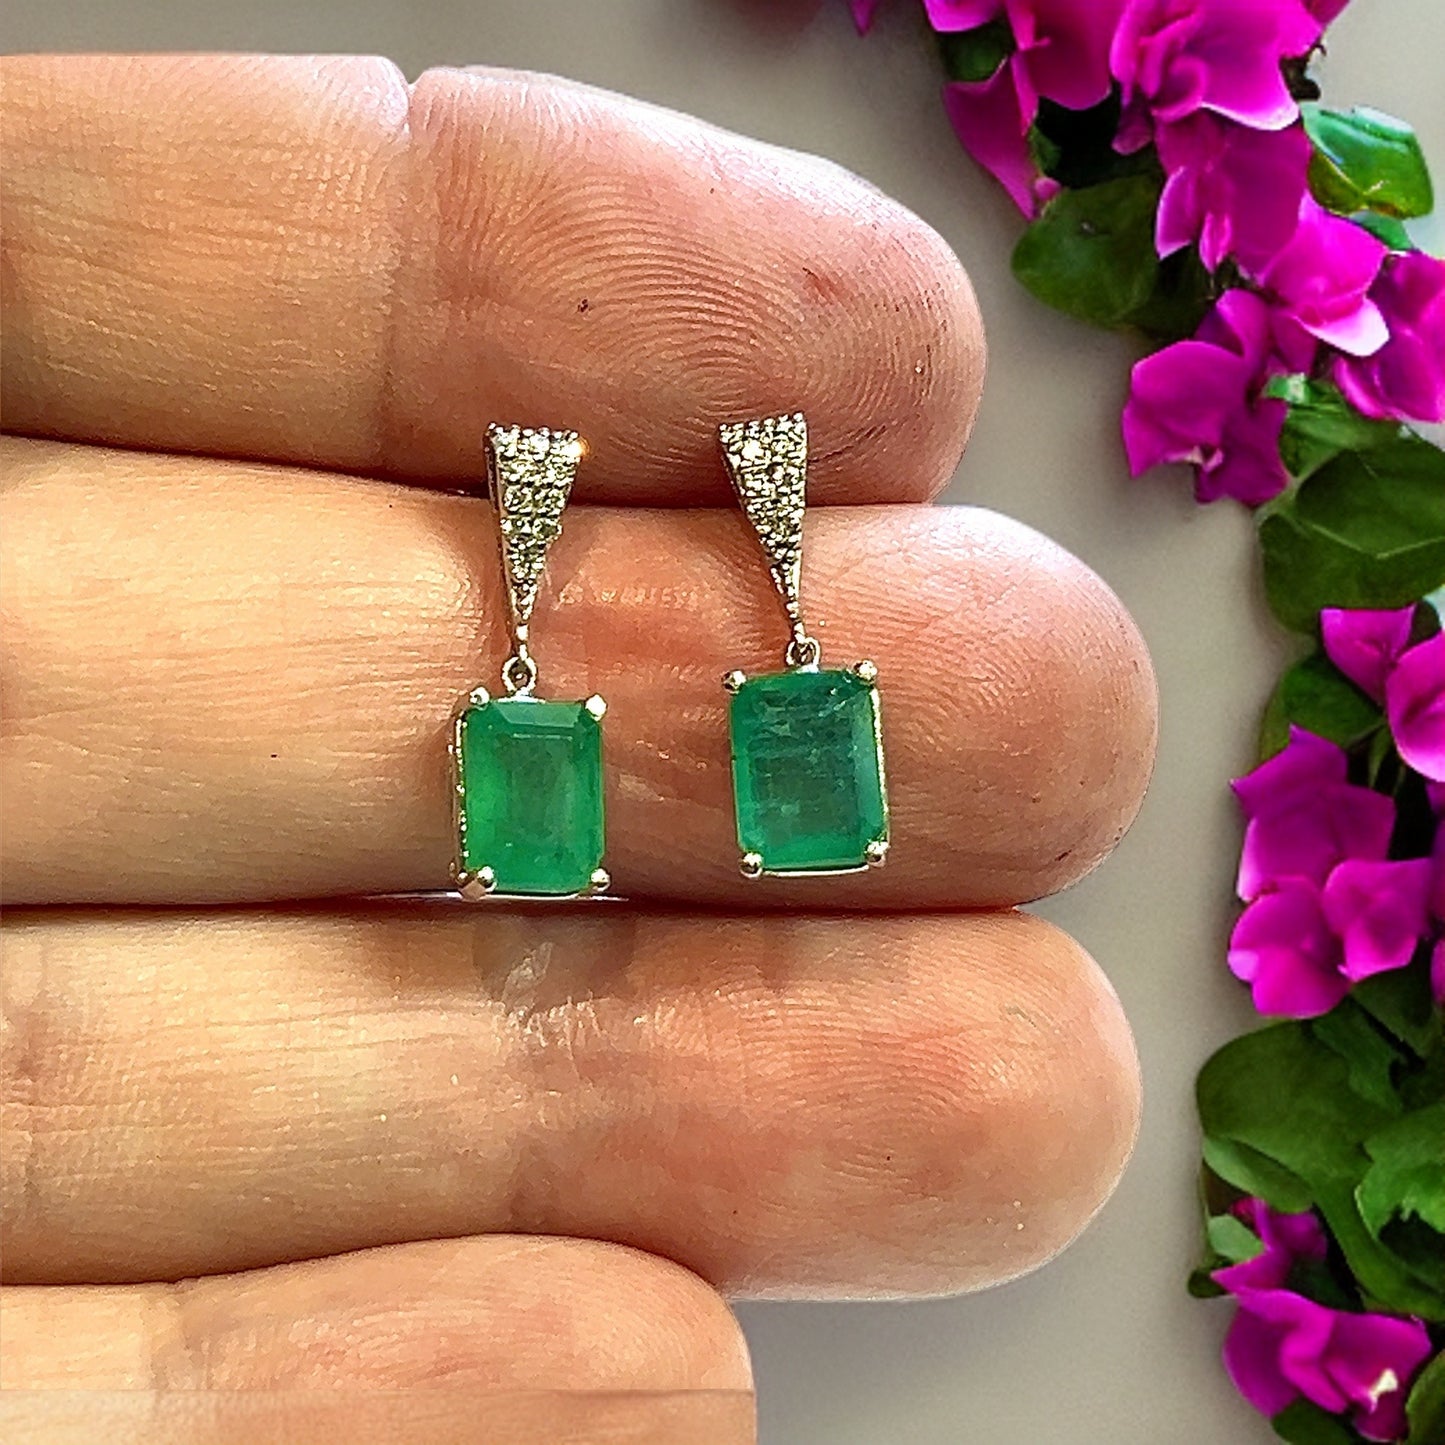 Natural Emerald Diamond Dangle Earrings 14k WG 2.99 TCW Certified $4,950 111889 - Certified Fine Jewelry